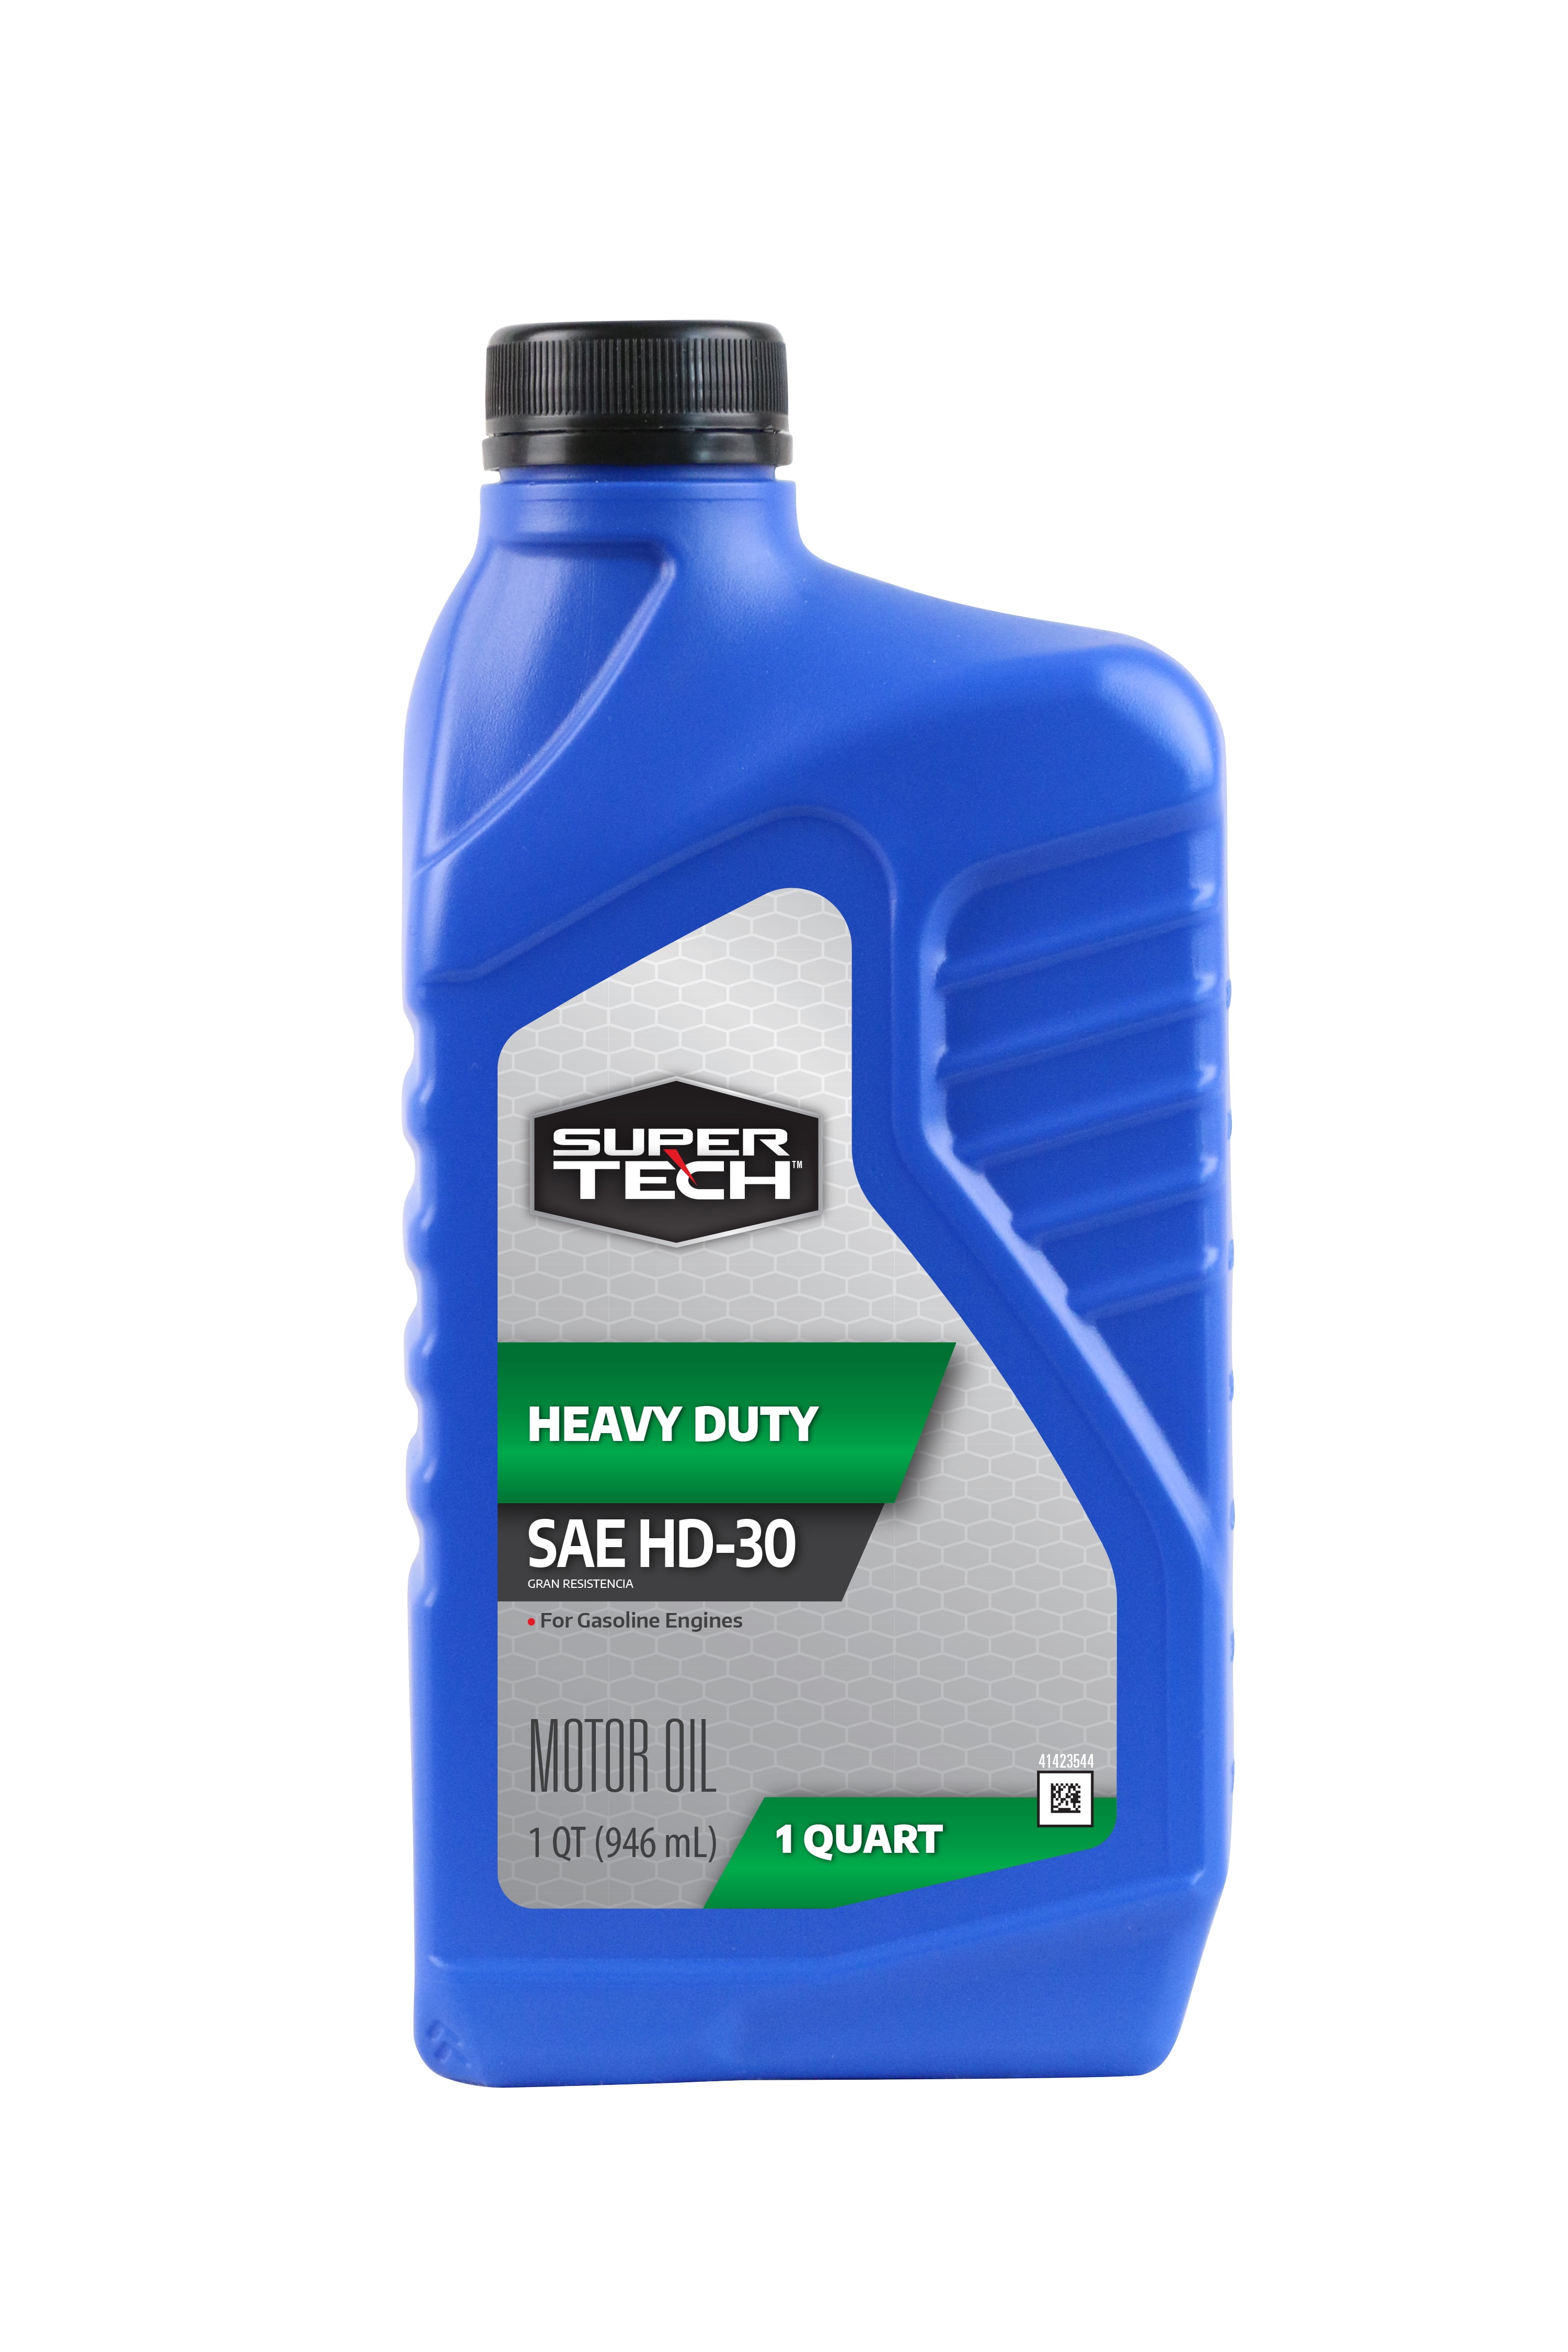 Super Tech Conventional SAE HD-30 Motor Oil, 1 Quart